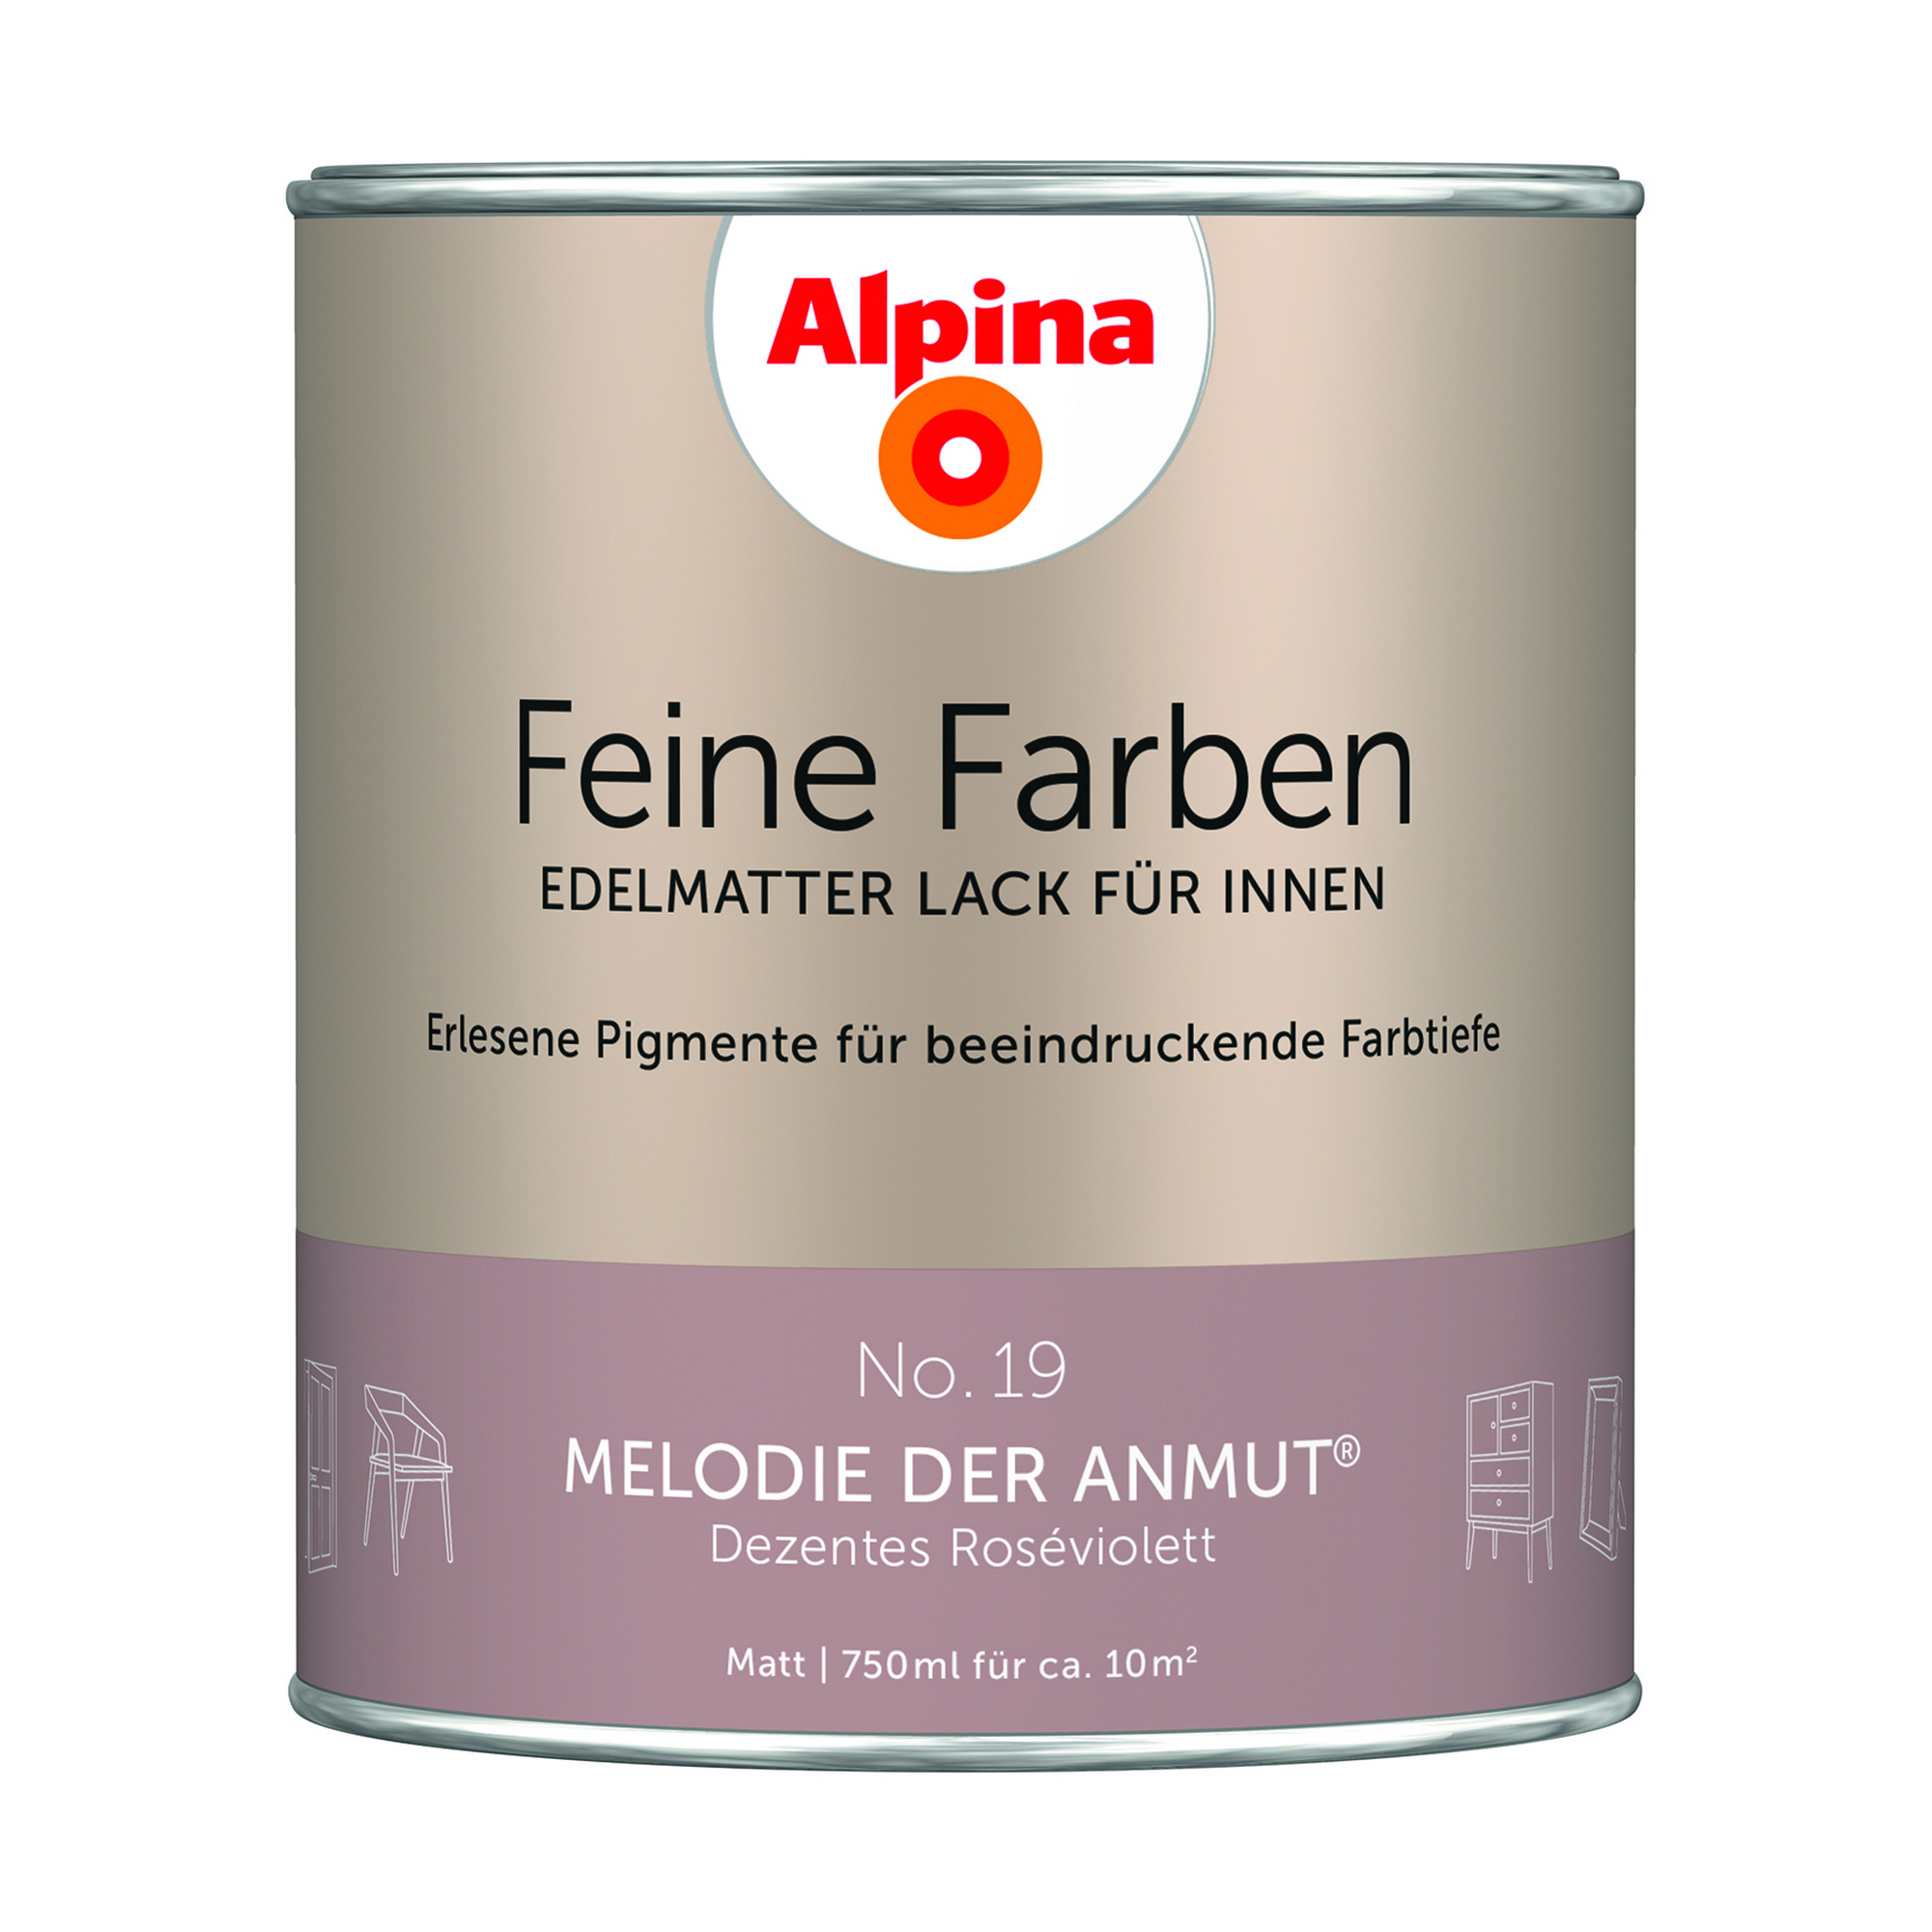 Feine Farben 'Melodie der Anmut' altrosa matt 750 ml + product picture